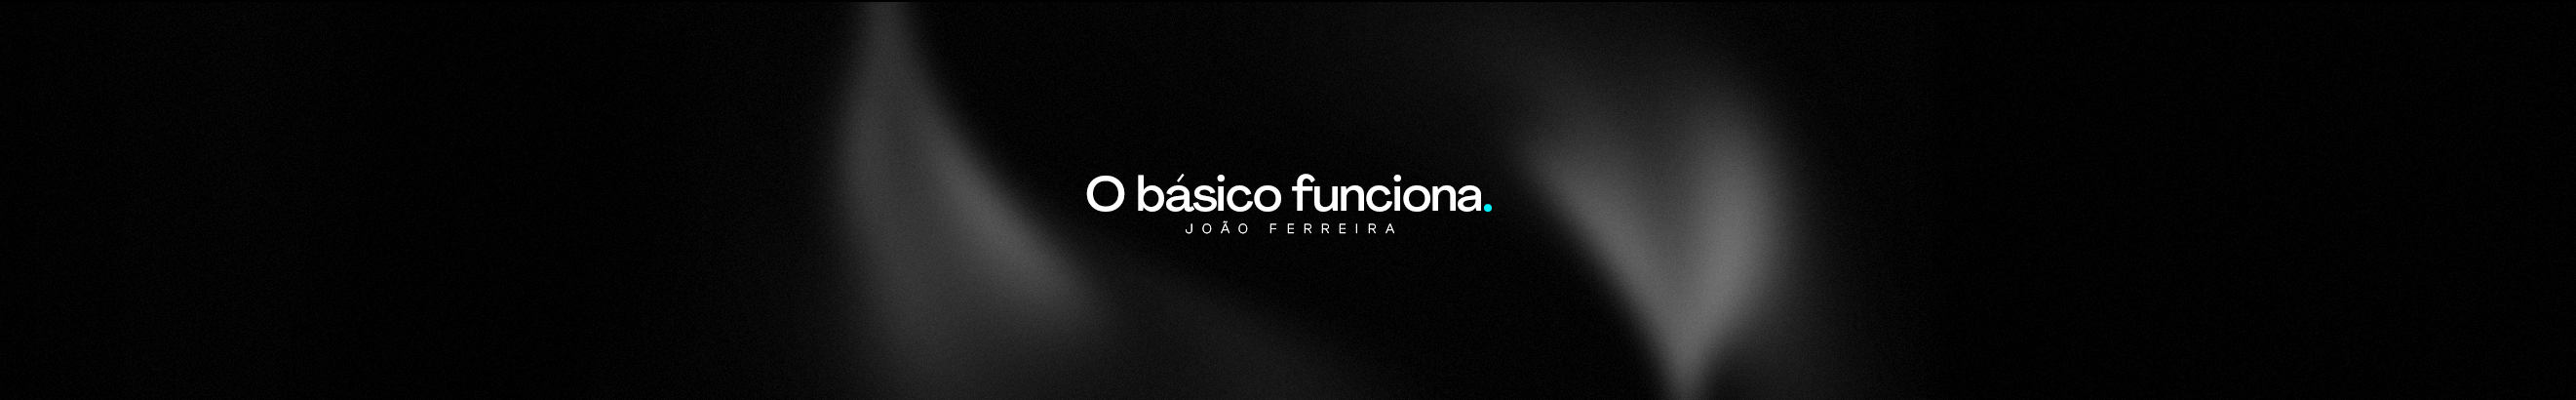 Banner de perfil de João Ferreira